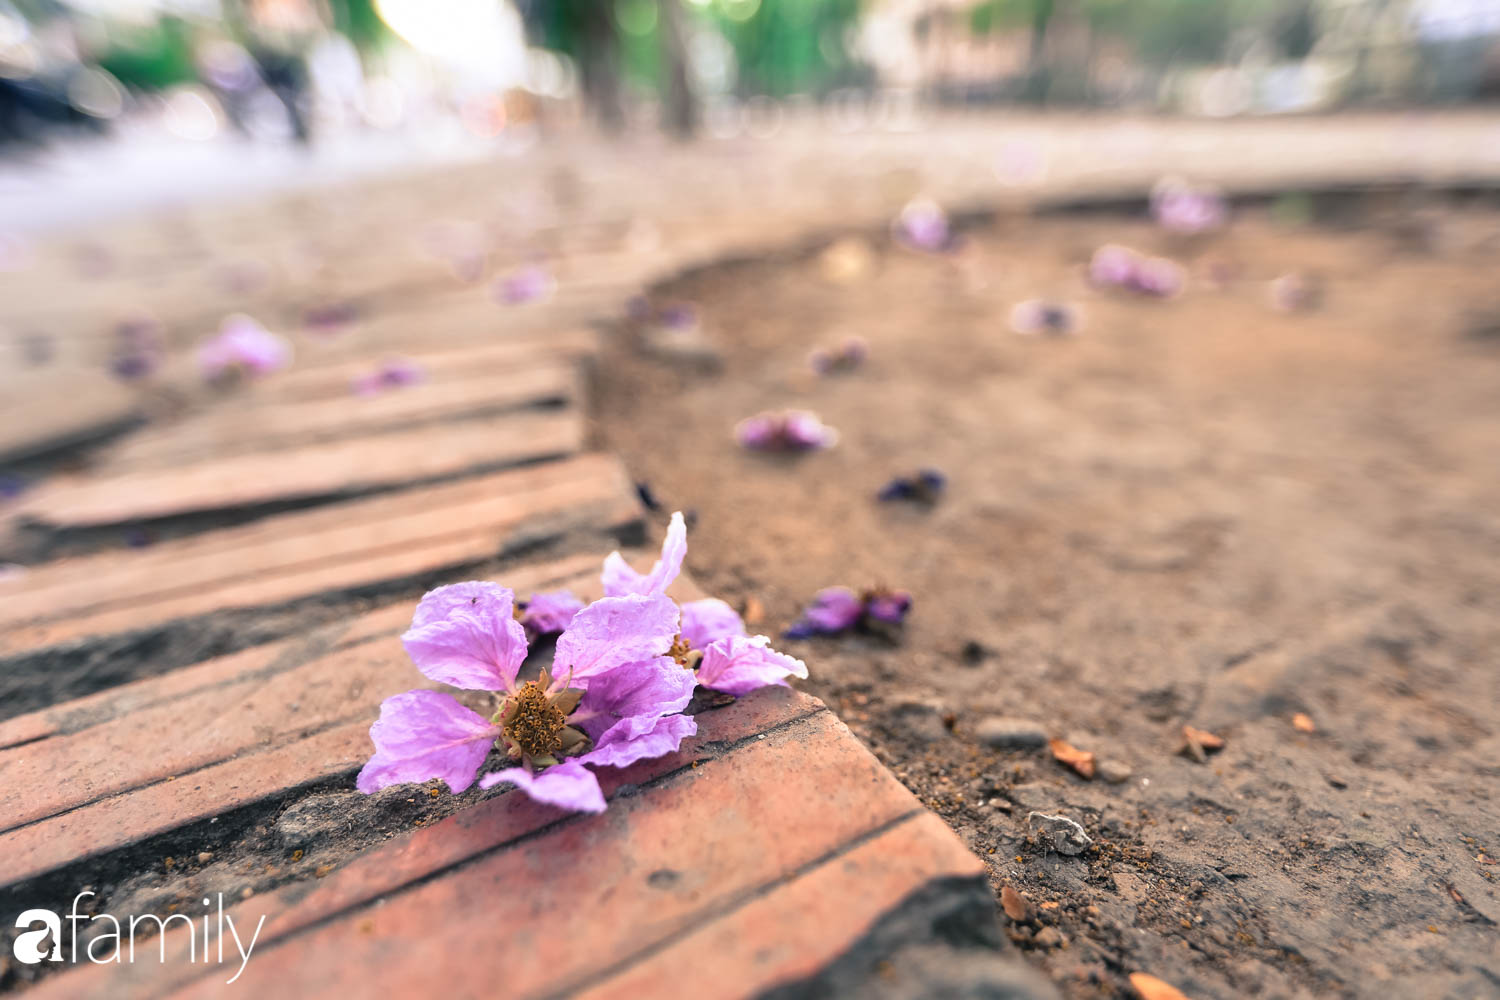 Trở lại cuộc sống bộn bề như trước, có mấy ai nhận ra Hà Nội đang trong một mùa hoa bằng lăng đẹp tuyệt vời - Ảnh 12.